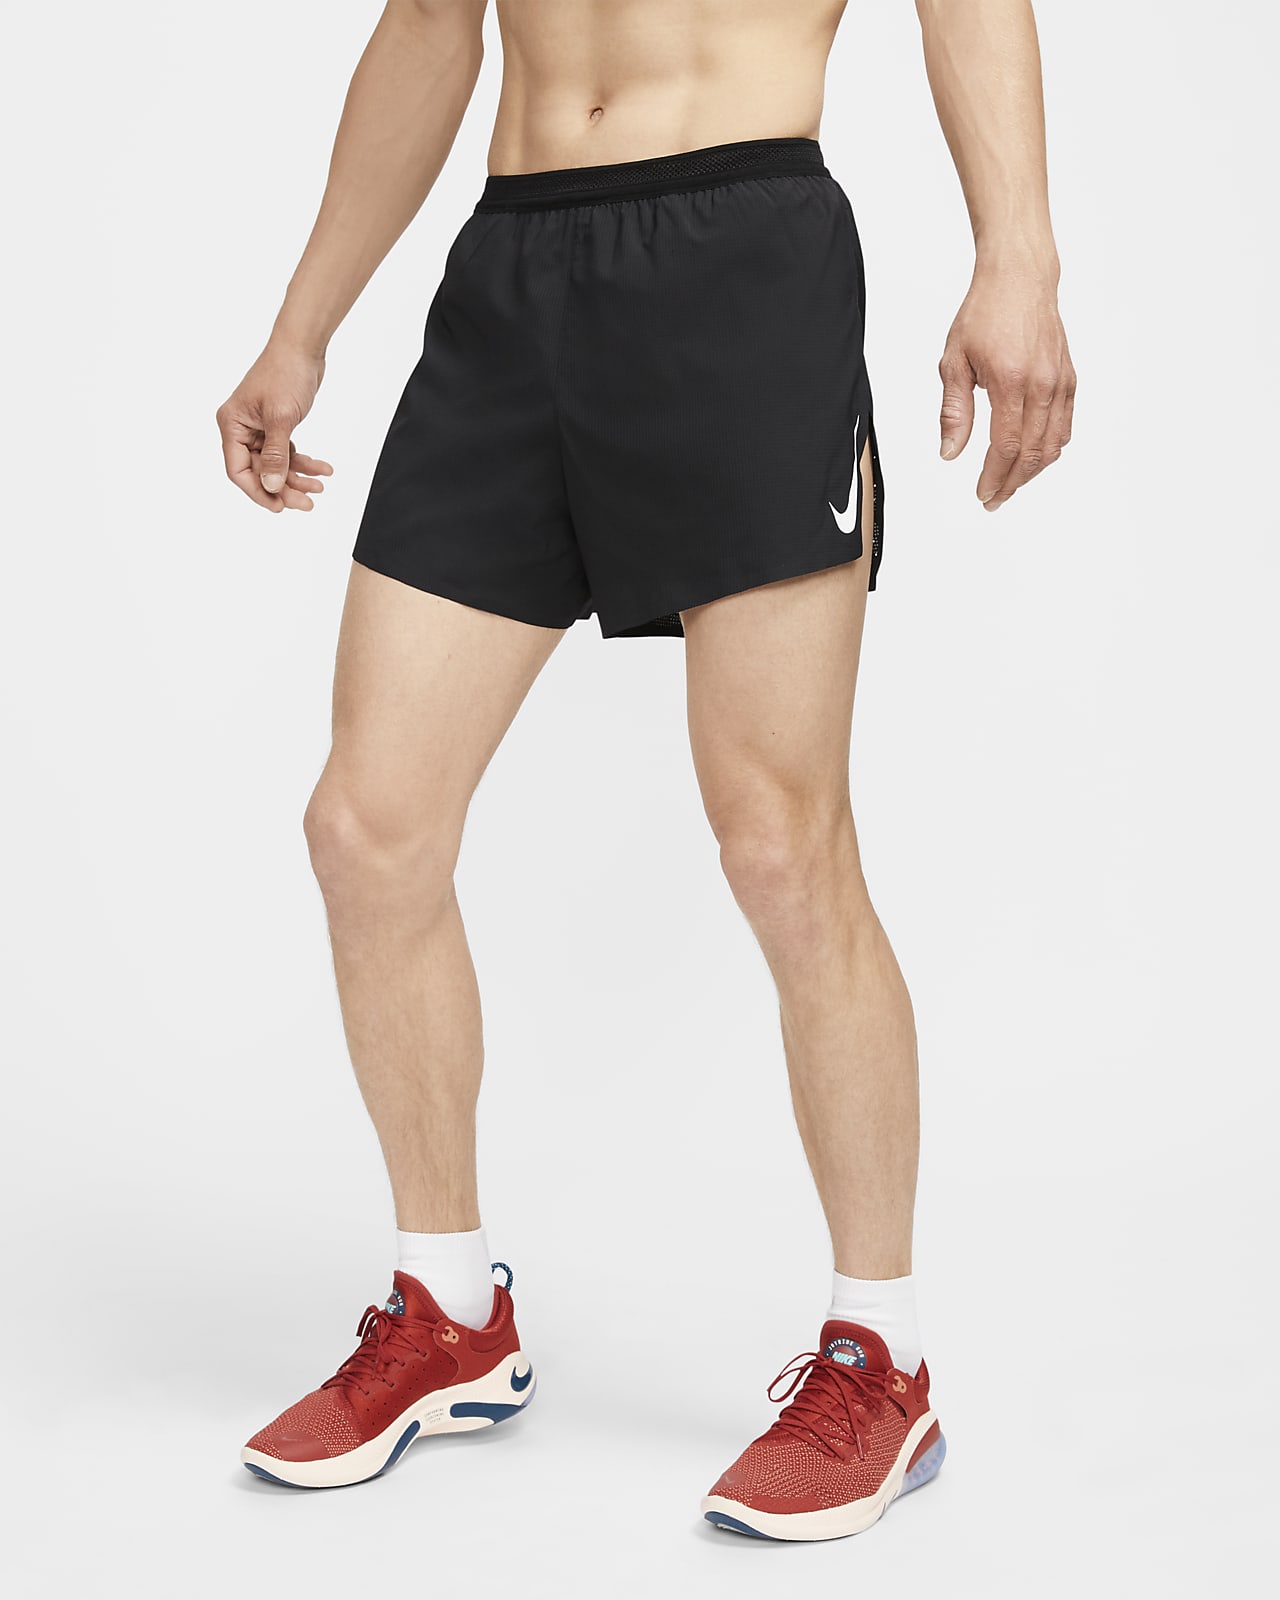 nike split running shorts